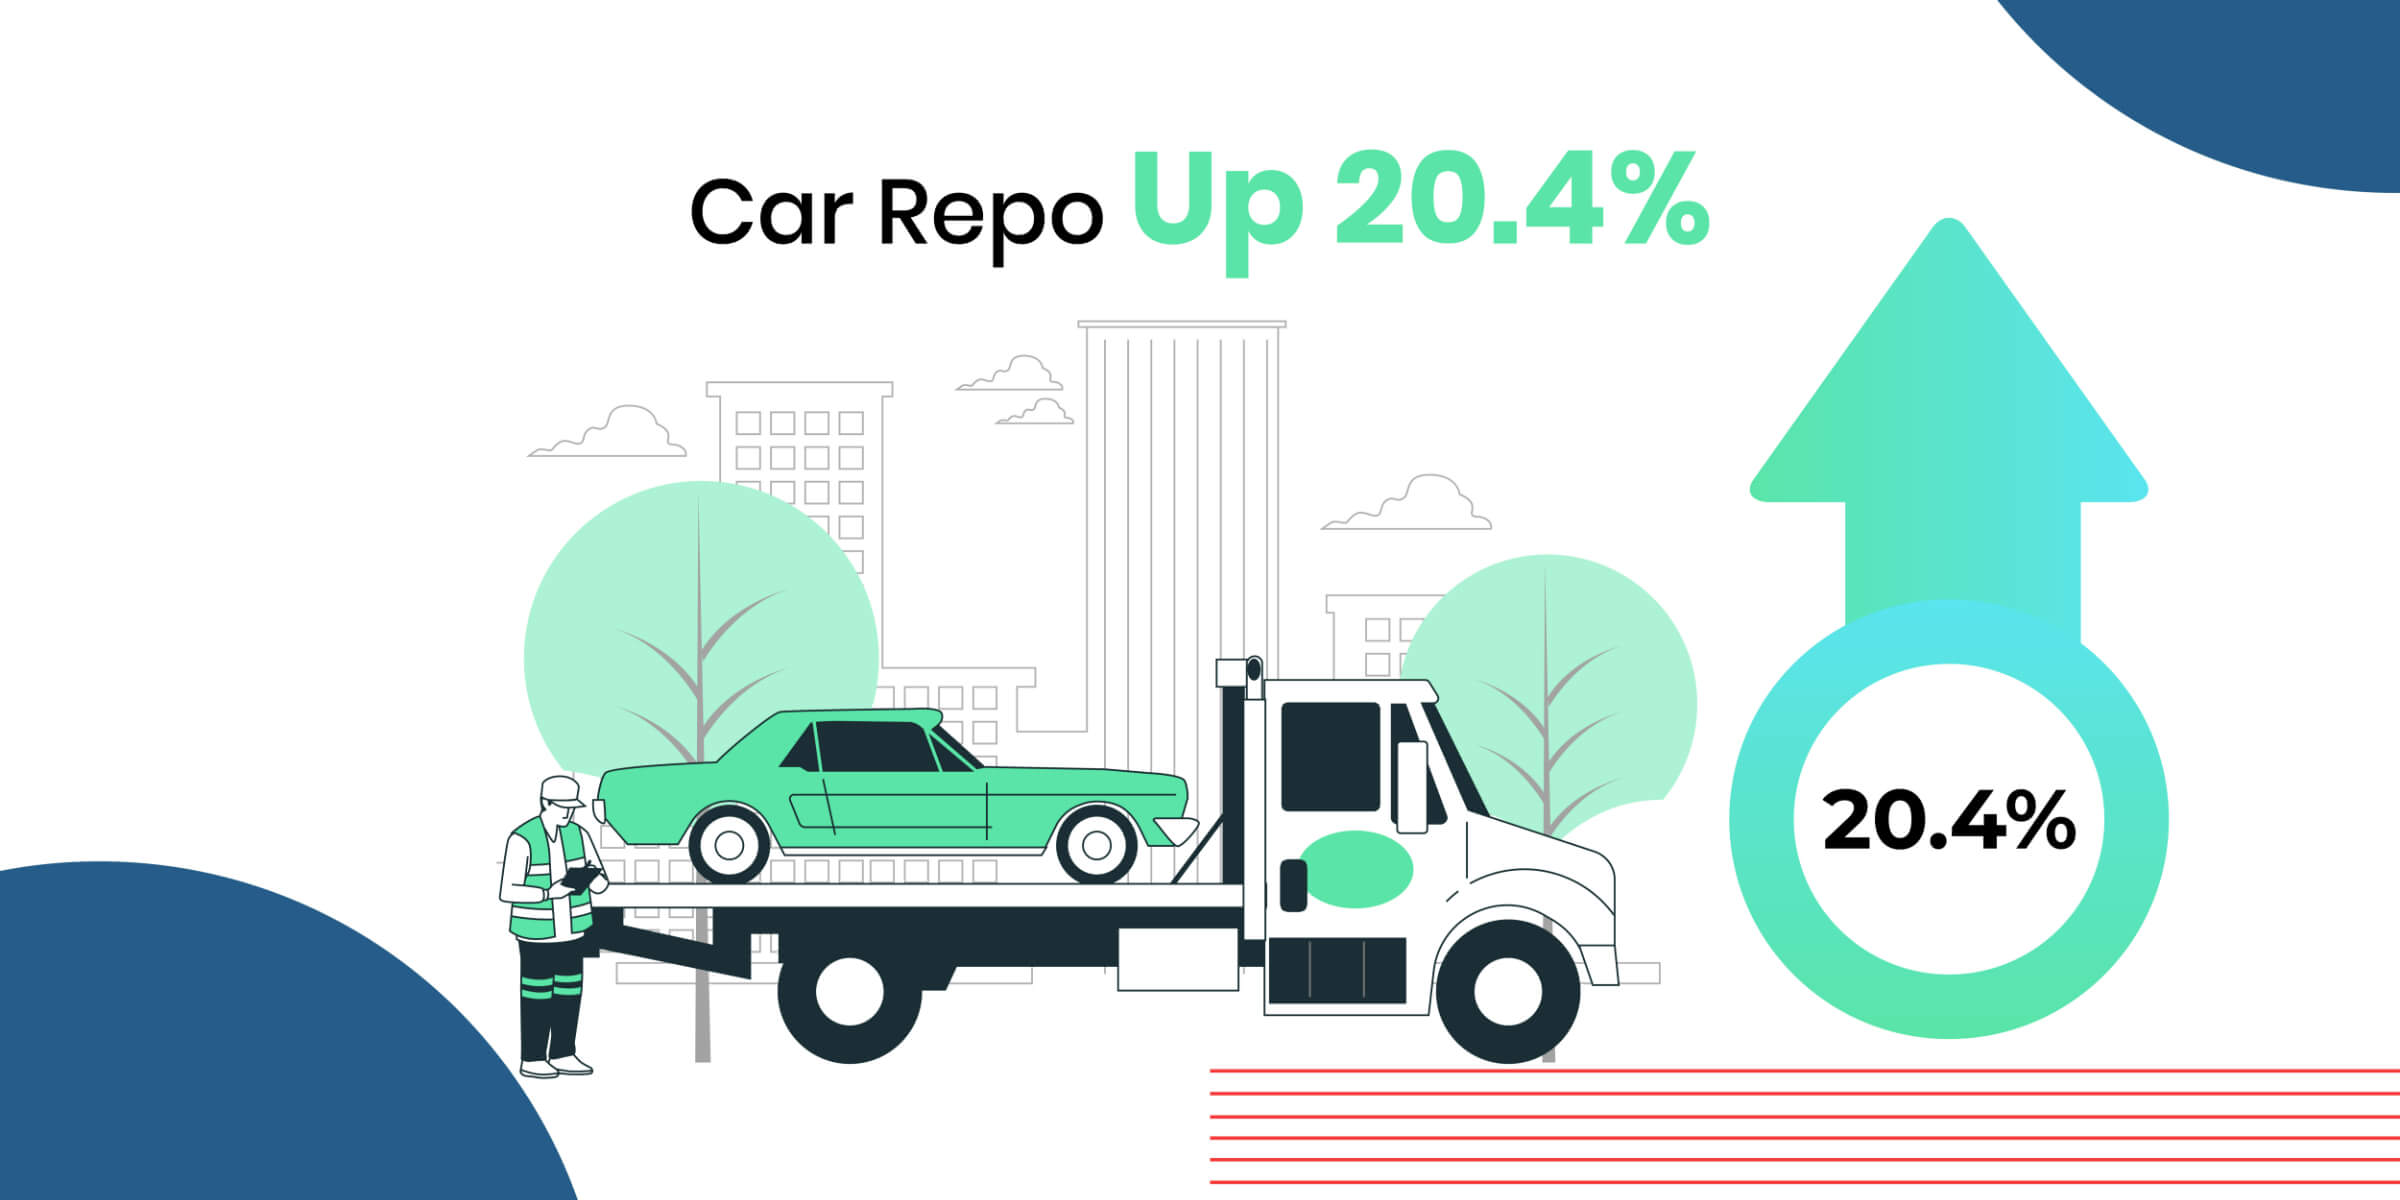 Car Repo Up 20.4